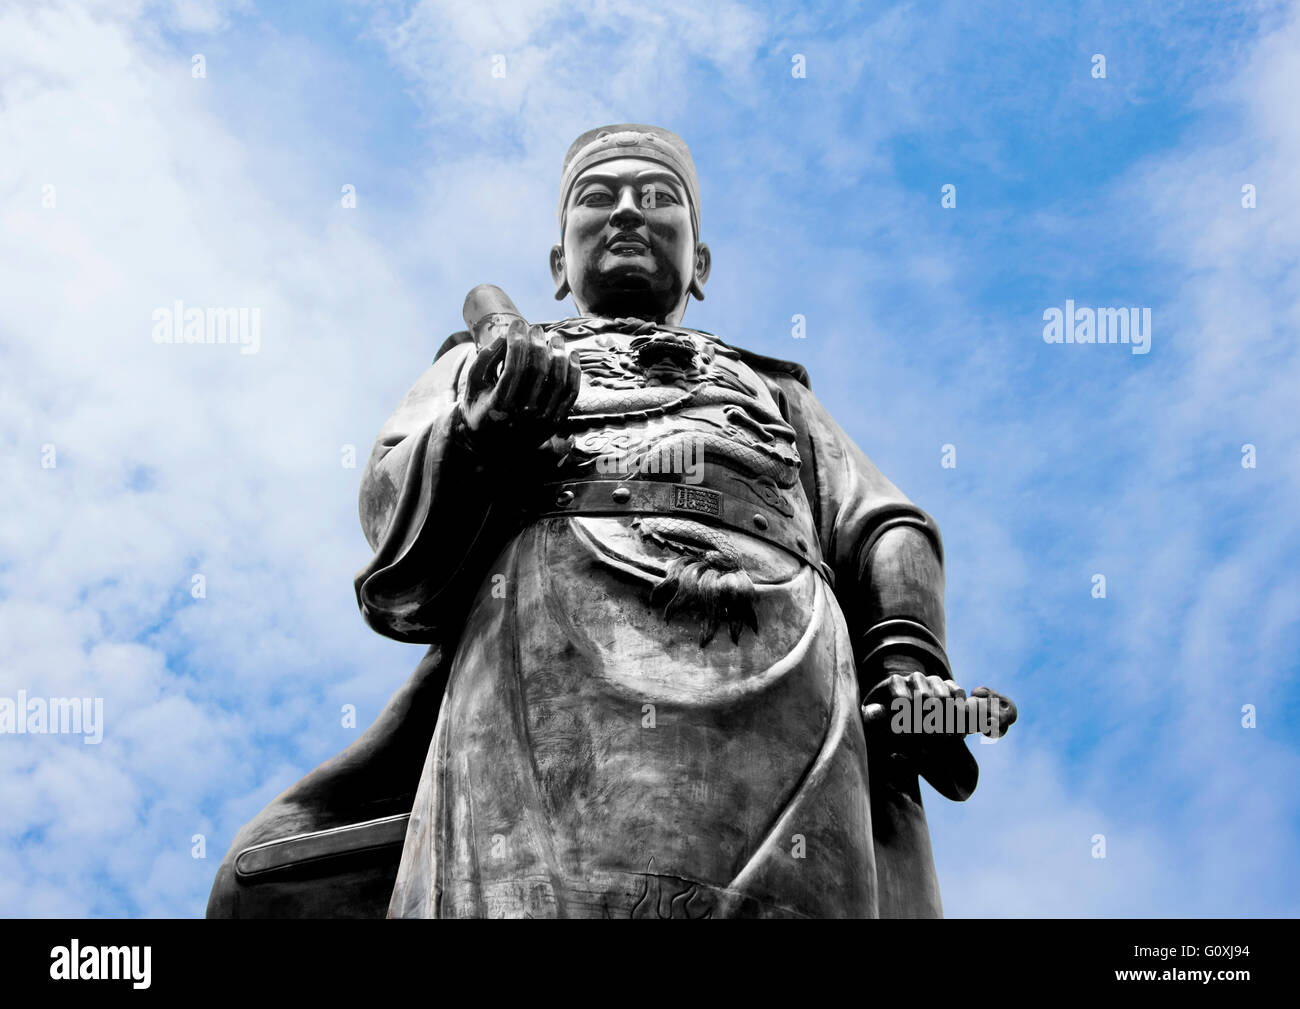 Admiral Statue Stock Photo